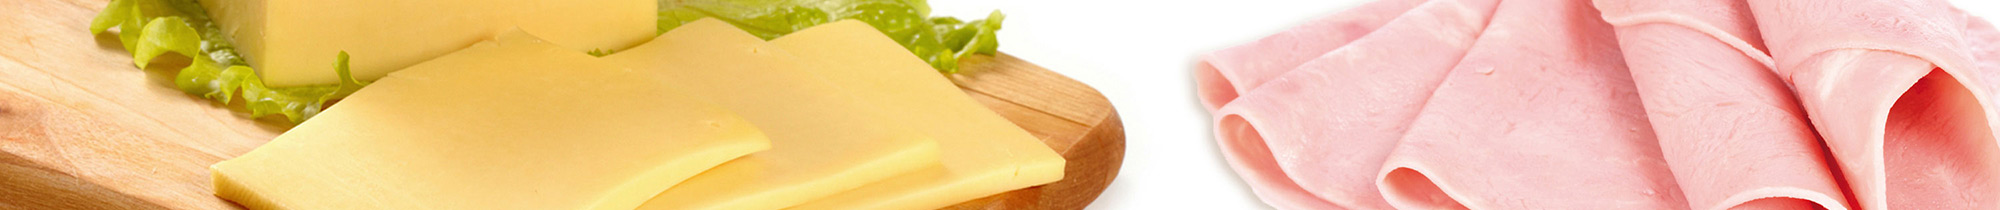 Crespelle prosciutto e formaggio